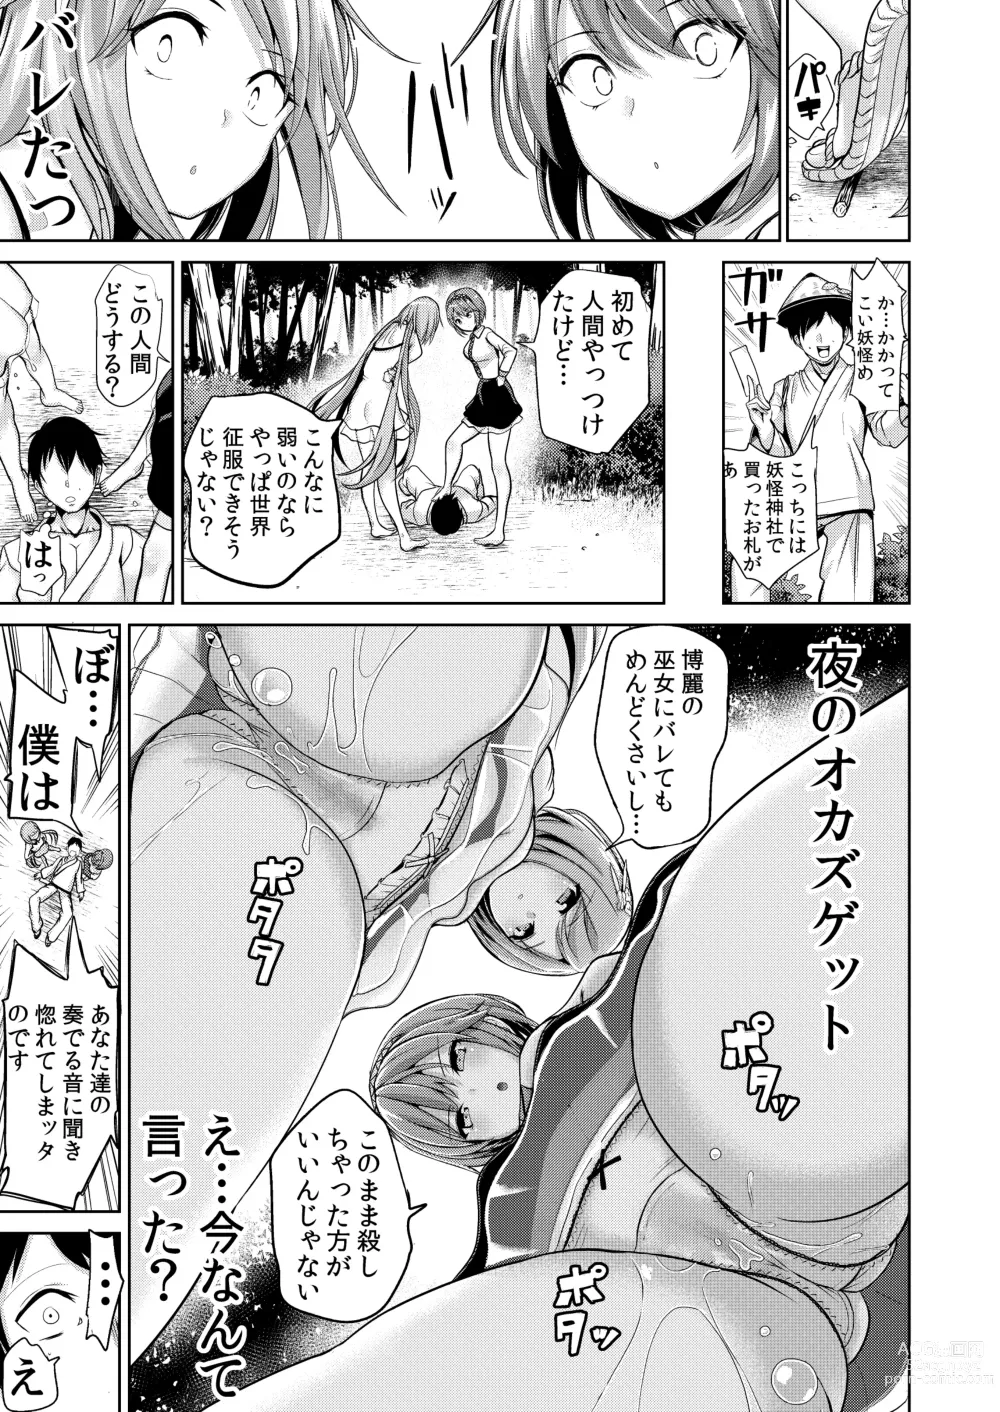 Page 4 of doujinshi Touhou Muchix 1 Tsukumo Shimai